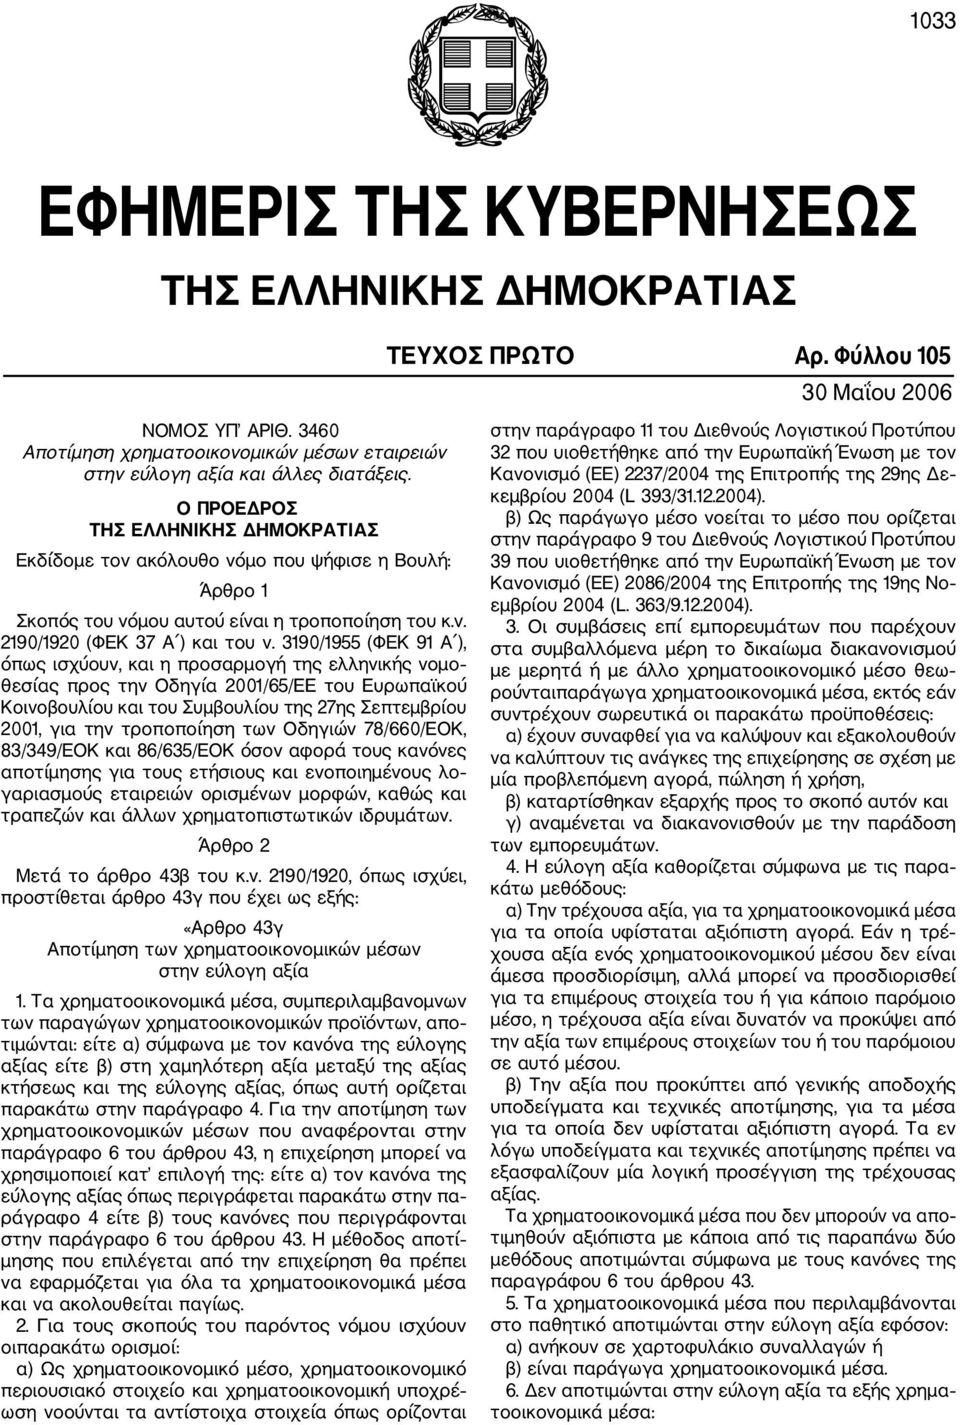 3190/1955 (ΦΕΚ 91 Α ), όπως ισχύουν, και η προσαρμογή της ελληνικής νομο θεσίας προς την Οδηγία 2001/65/ΕΕ του Ευρωπαϊκού Κοινοβουλίου και του Συμβουλίου της 27ης Σεπτεμβρίου 2001, για την